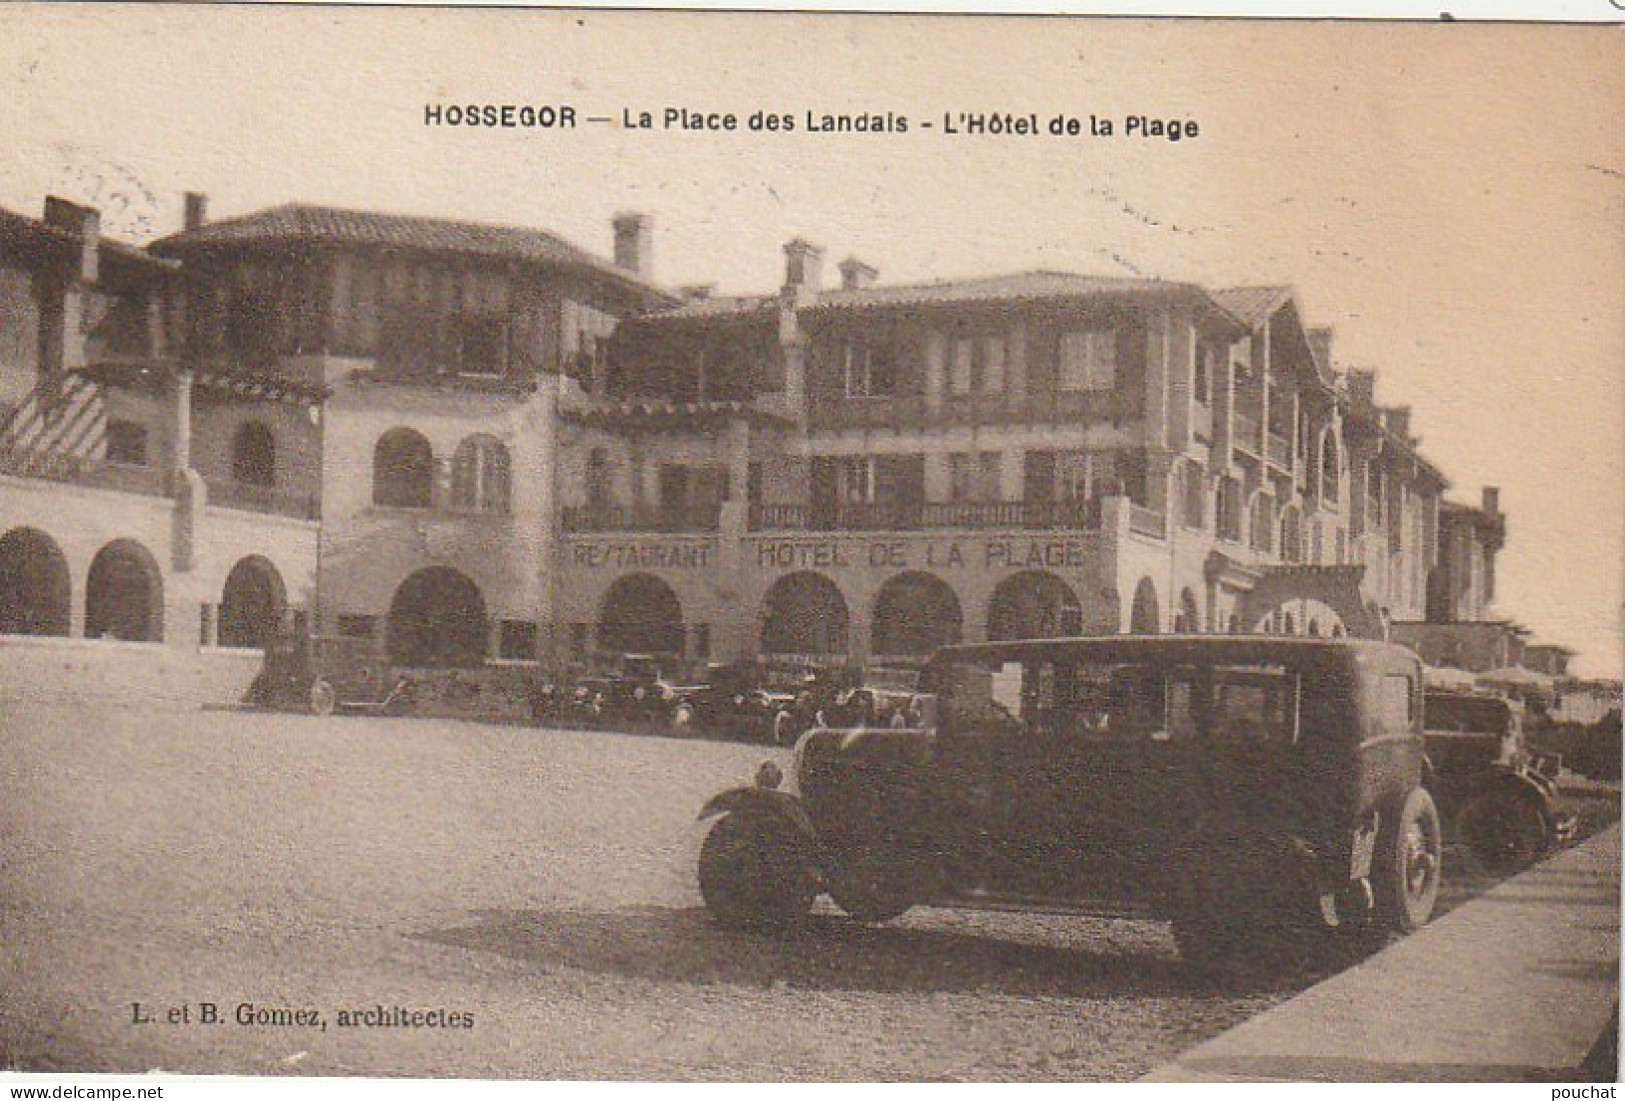 DE 24 -(40) HOSSEGOR  -  LA PLACE DES LANDAIS  - L ' HOTEL DE LA PLAGE  - AUTOMOBILES -   2 SCANS - Hossegor